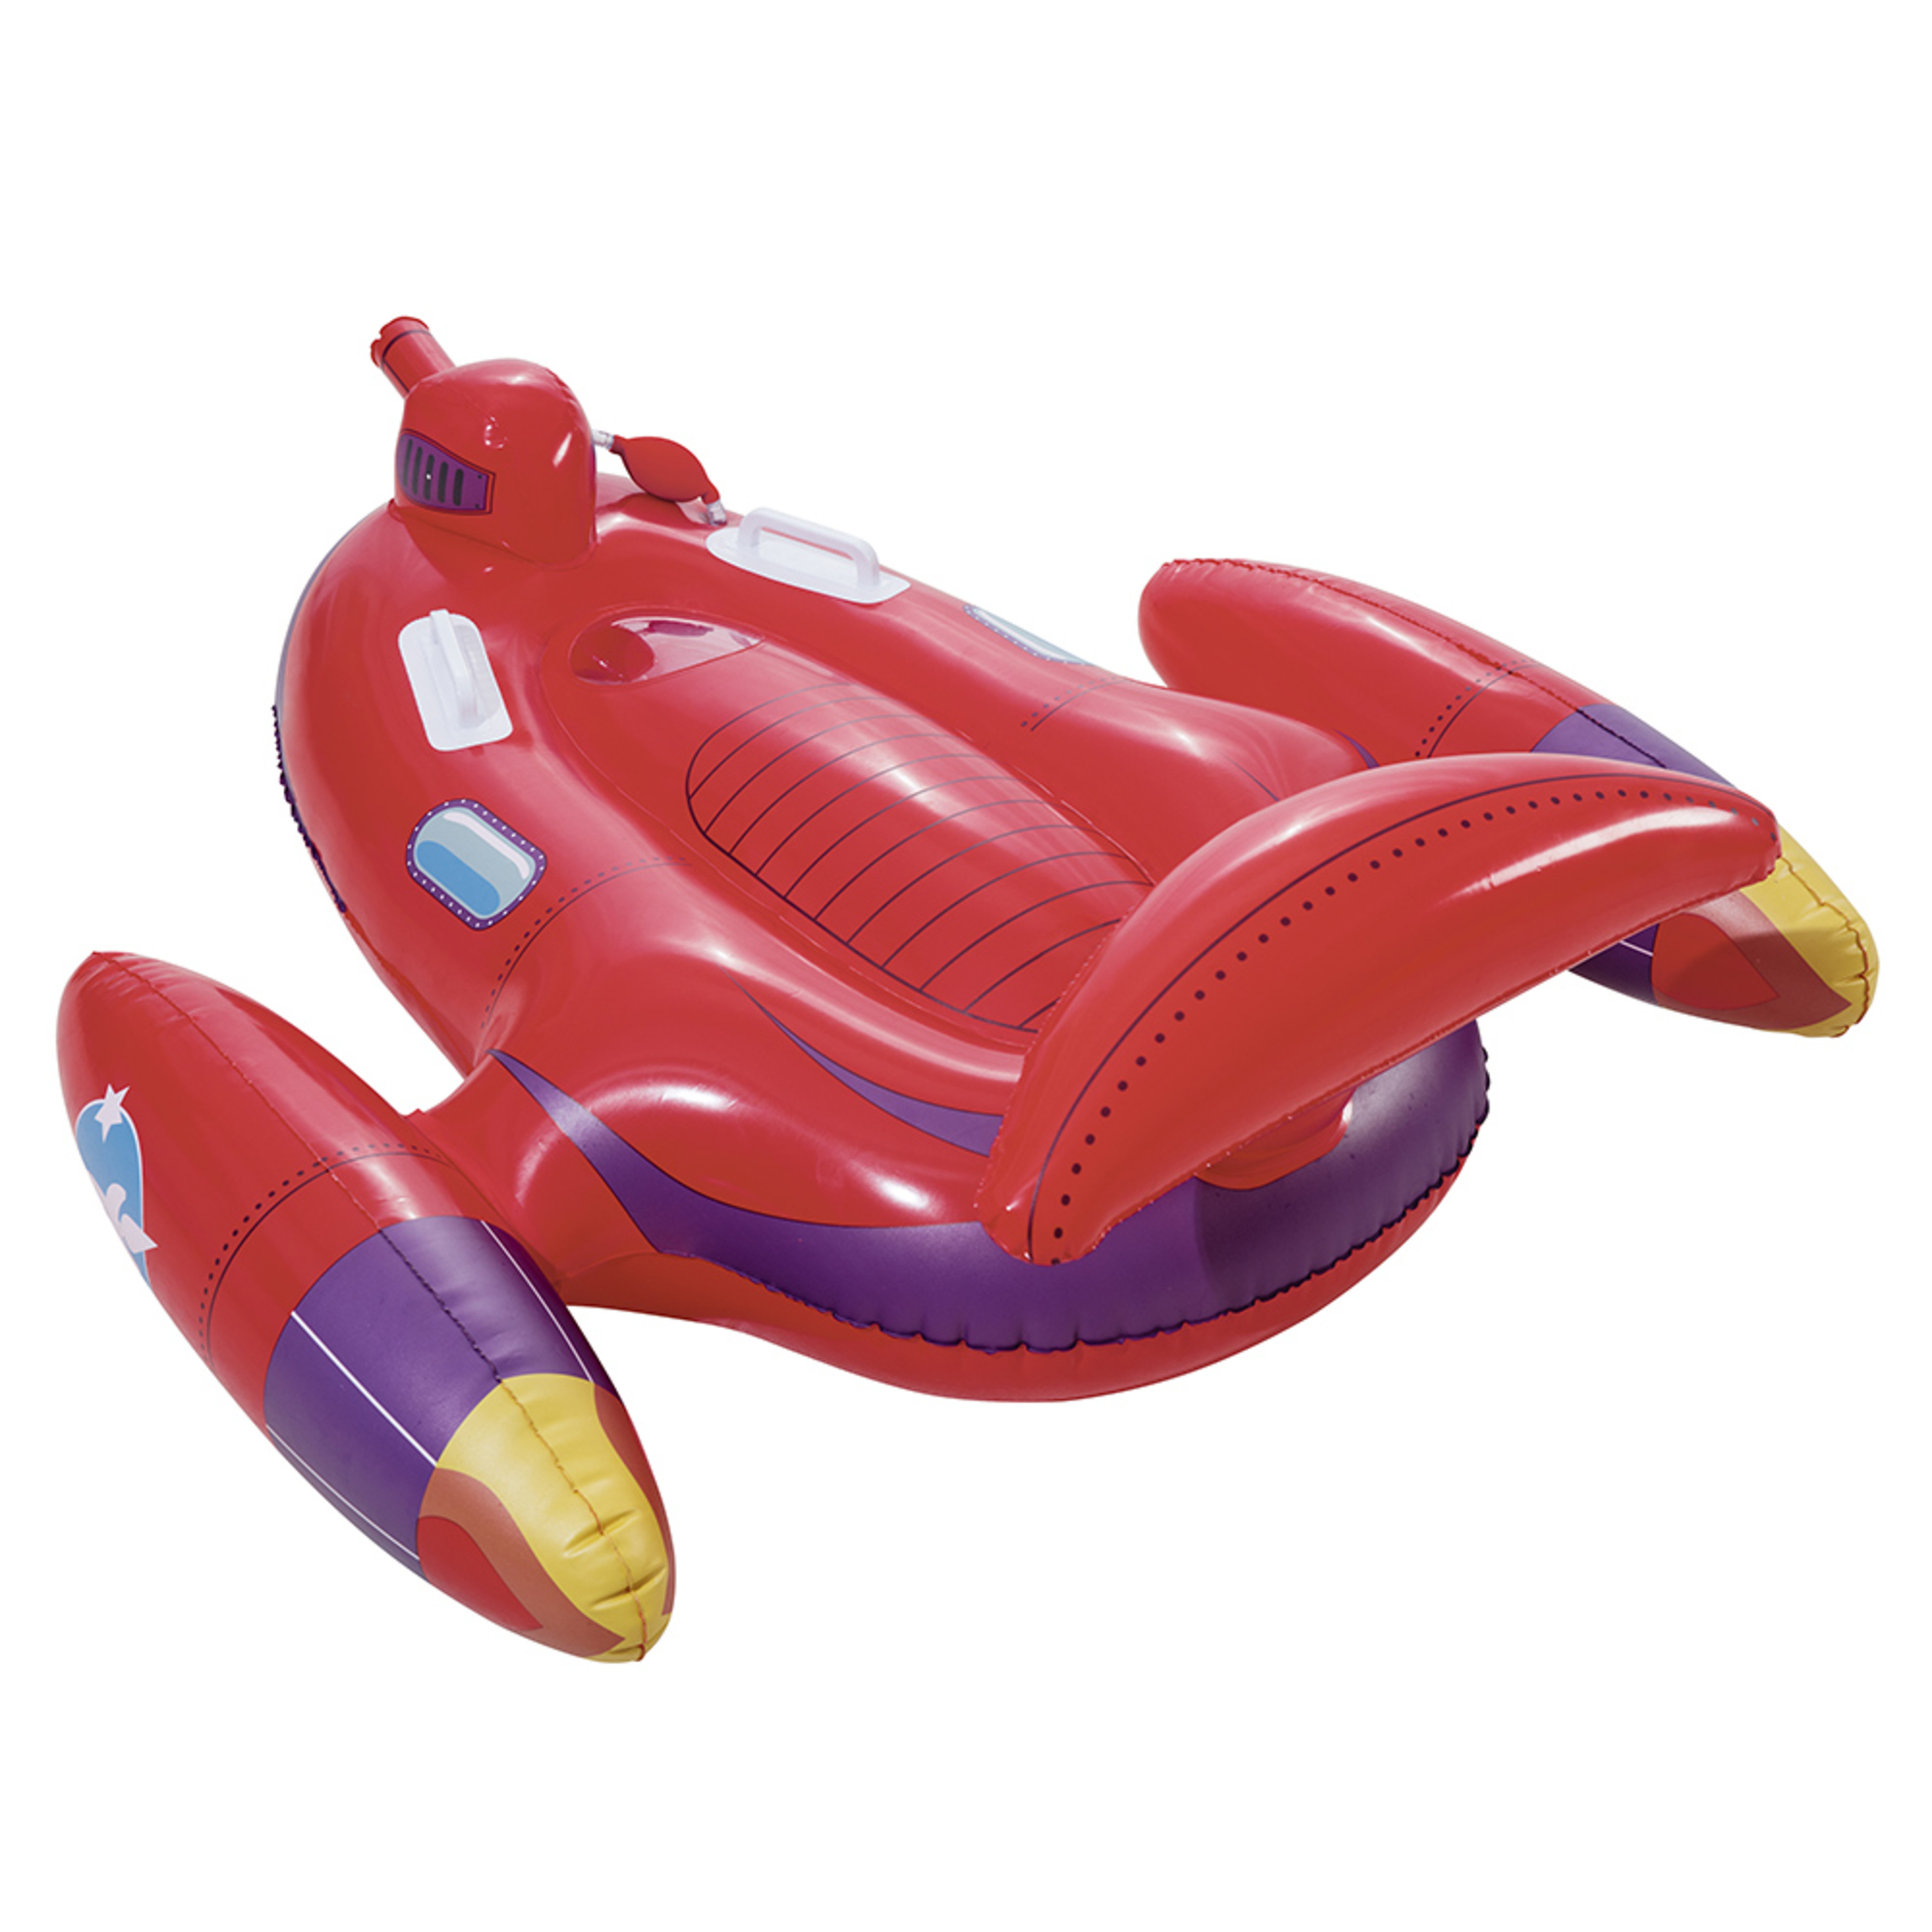 Flotador Gigante Hinchable Rojo Infantil De Pvc De 89x109 Cm - rojo - 